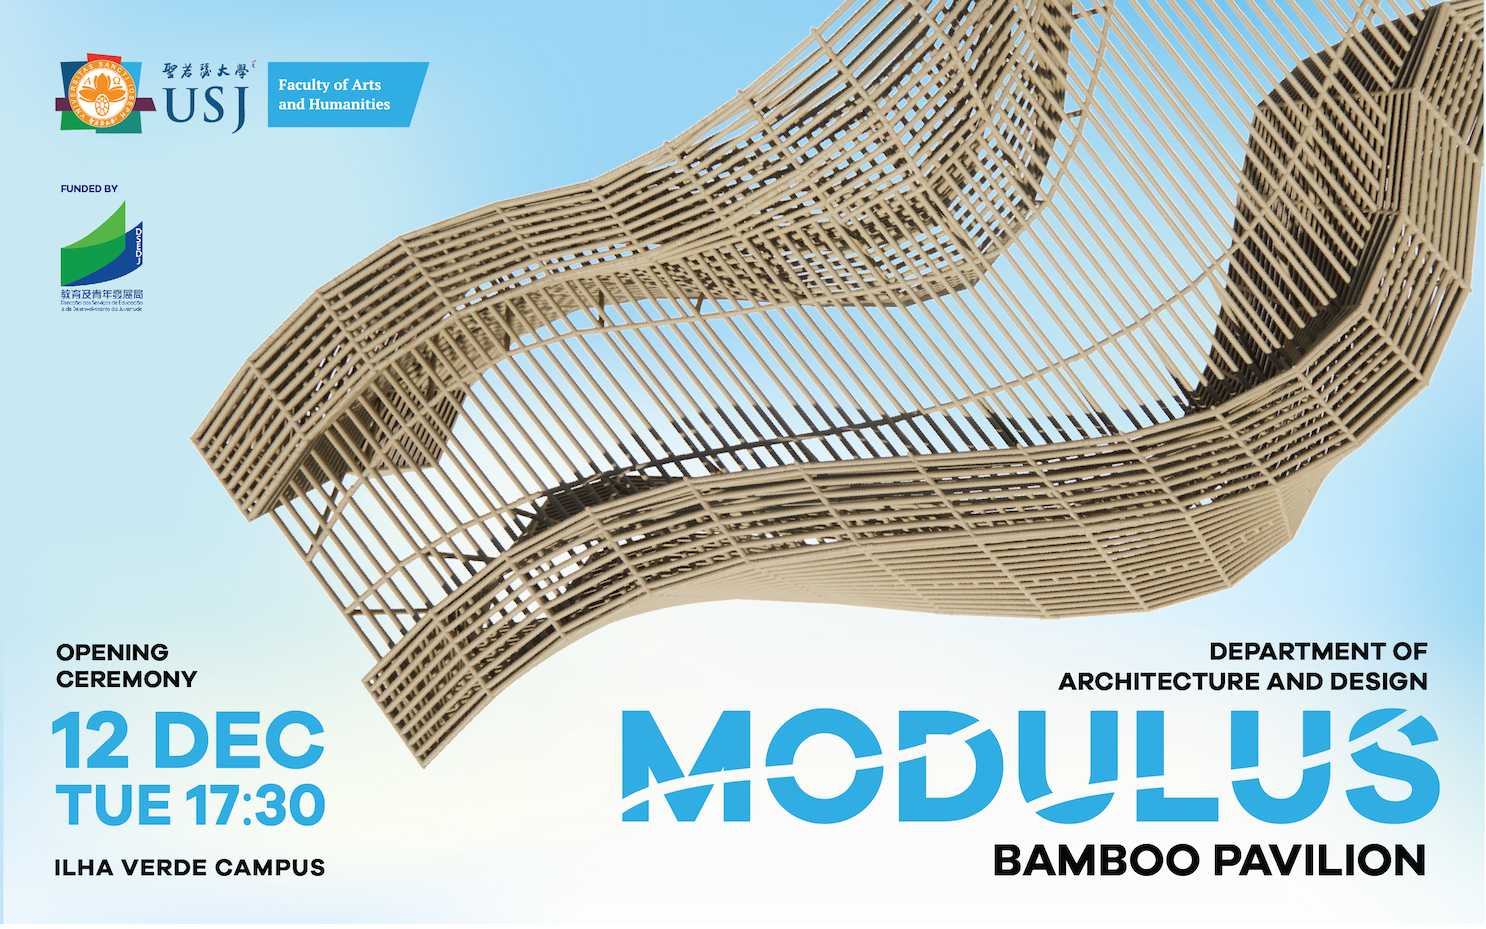 USJ | Pavilhão em bambu “MODULUS” para ver até Janeiro